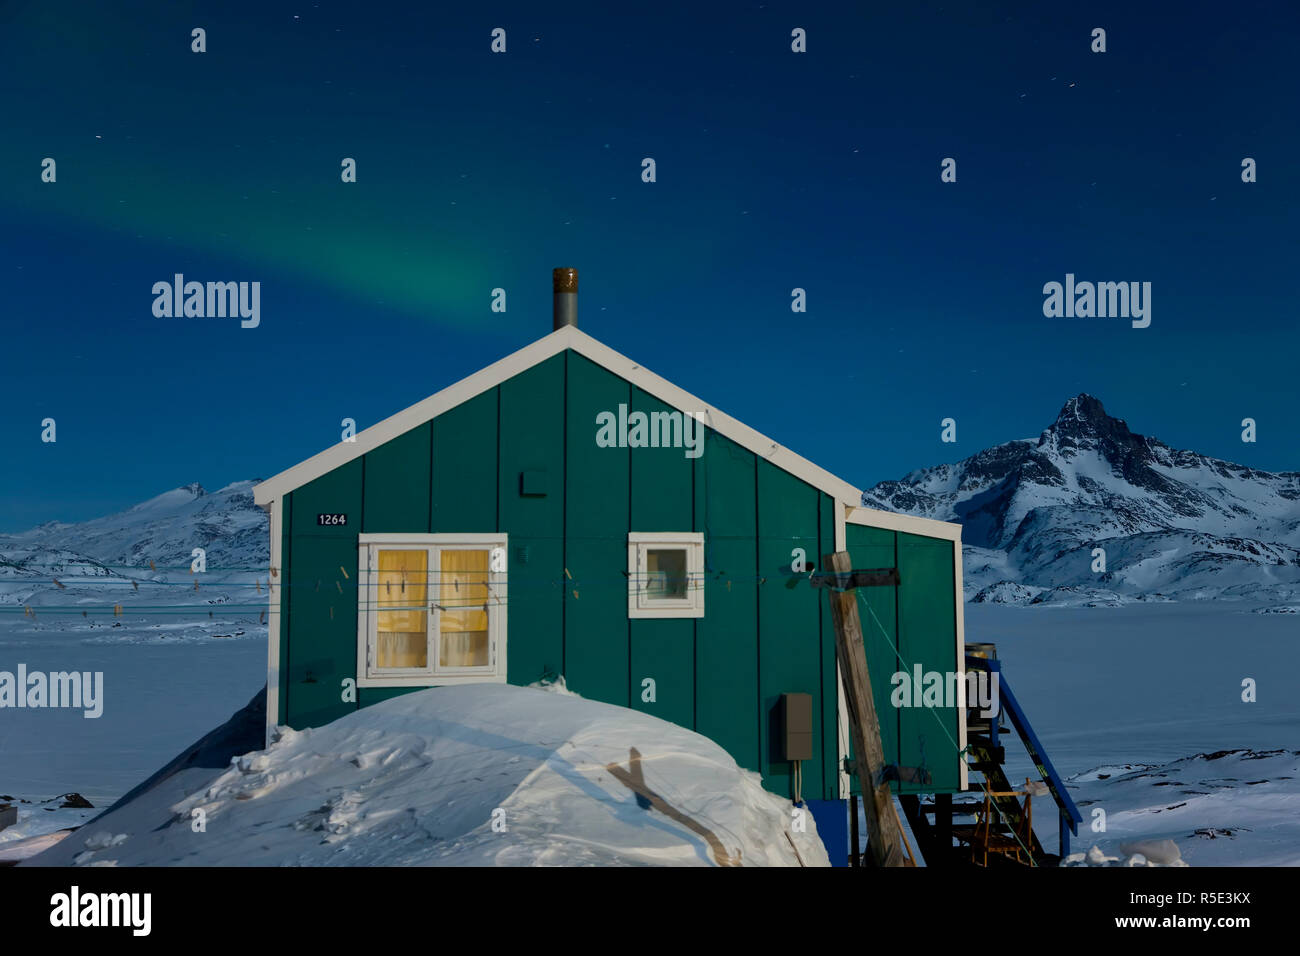 Aurore boréale ou lumières polaires du Nord, le Groenland Tasiilaq, E. Banque D'Images